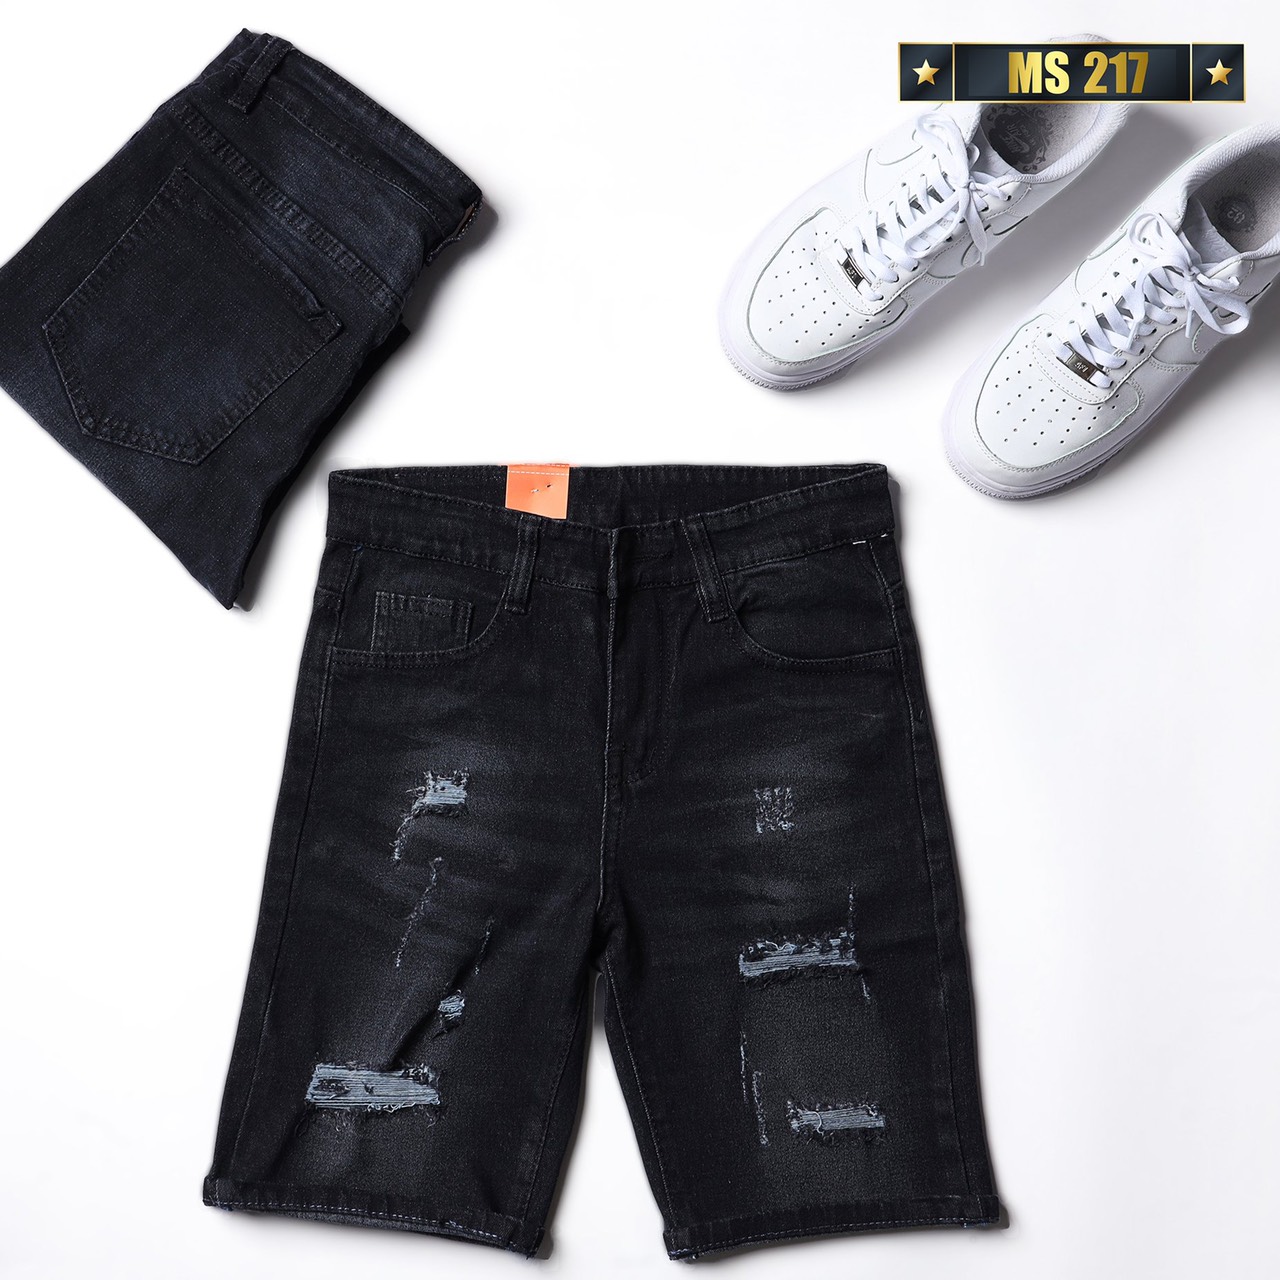 Quần short jean nam co giãn màu đen rách, quần sọt nam mẫu mới chất denim cao cấp thời trang Benny Fashion - MQ217